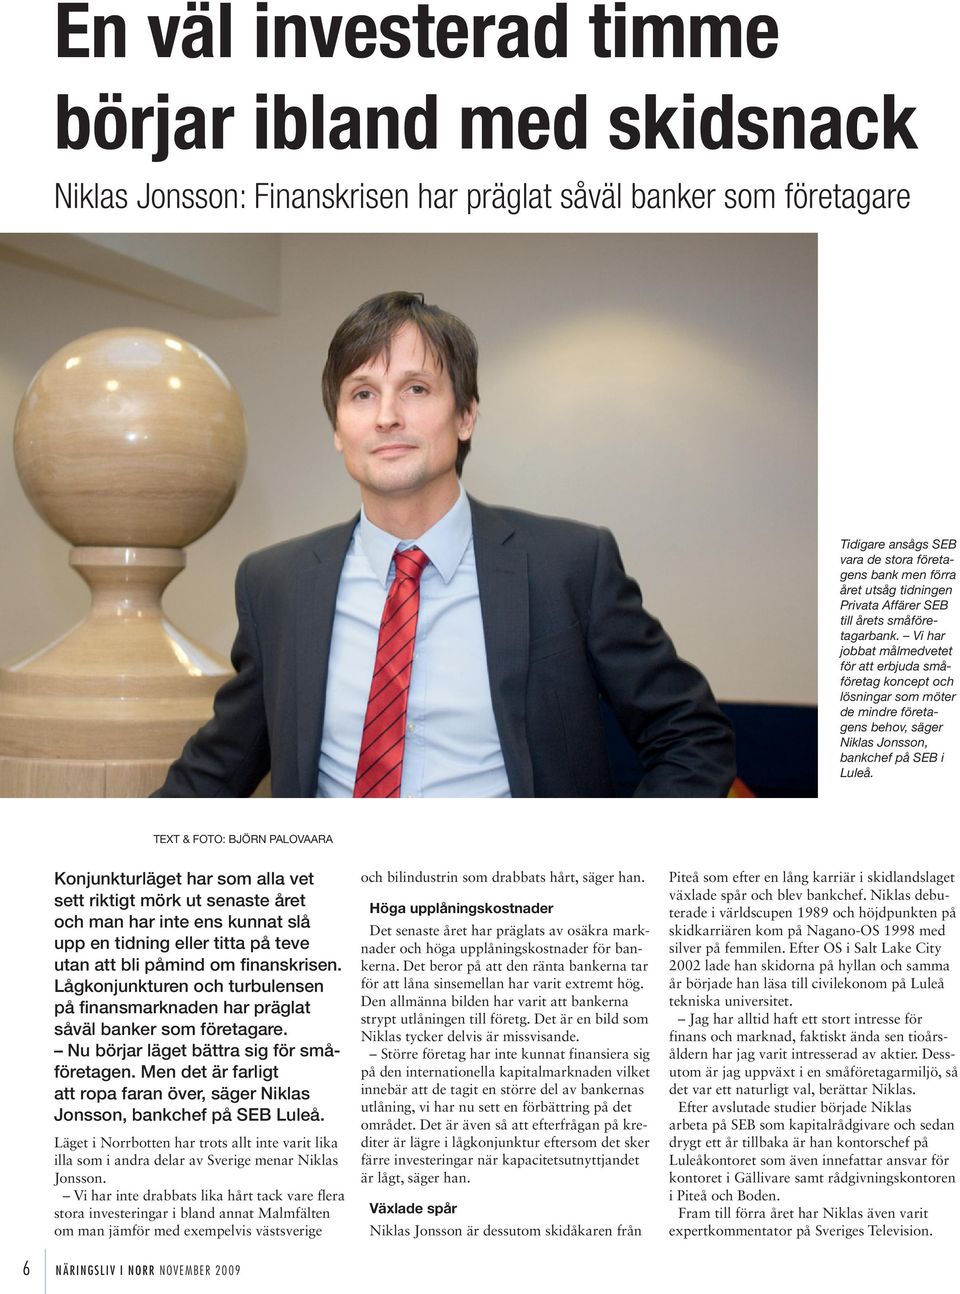 Vi har jobbat målmedvetet för att erbjuda småföretag koncept och lösningar som möter de mindre företagens behov, säger Niklas Jonsson, bankchef på SEB i Luleå.